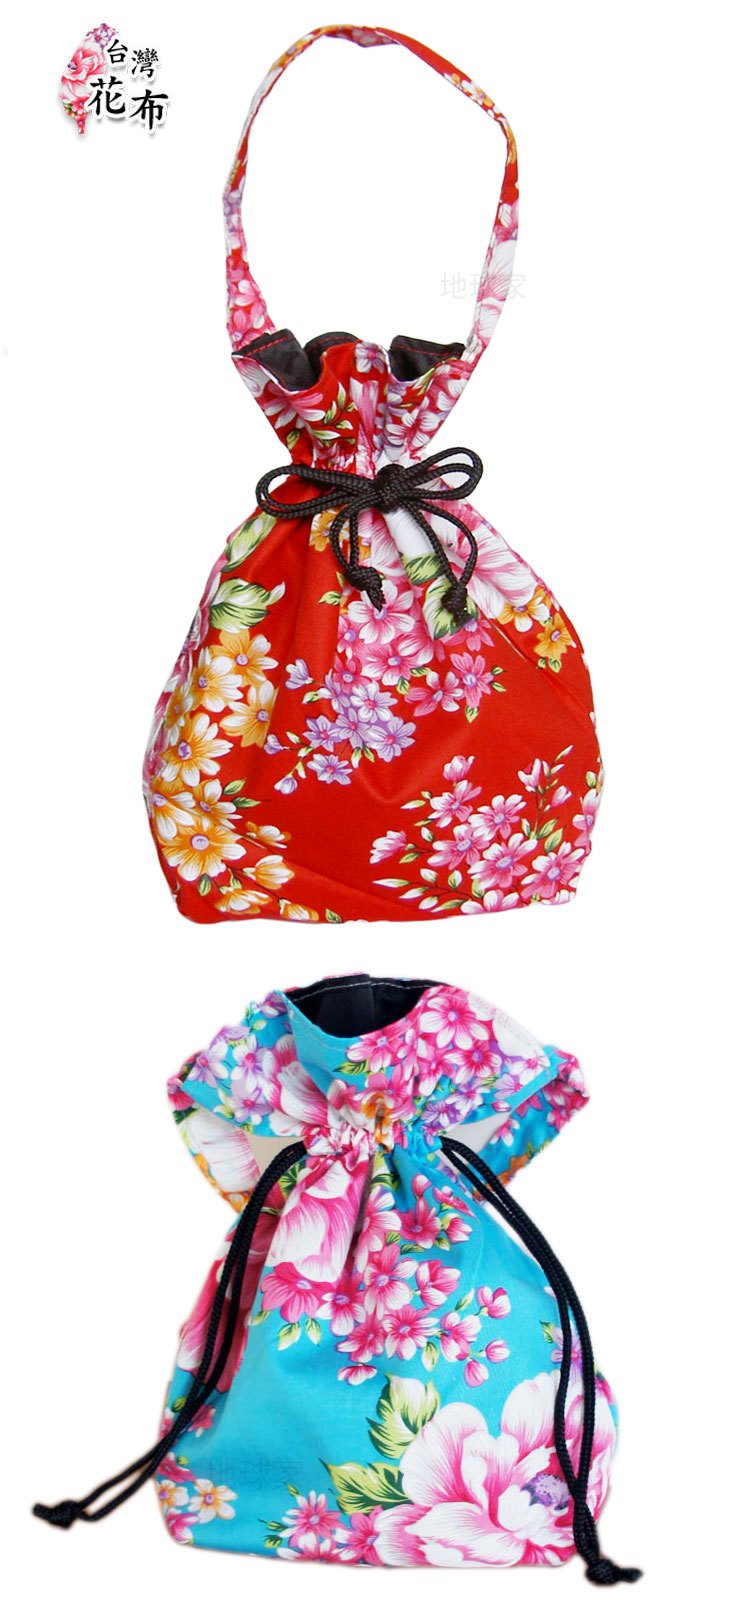 弘麒國際有限公司 台灣製花布系列 客家花布束口袋 時尚設計 大方實用 地球家 弘麒